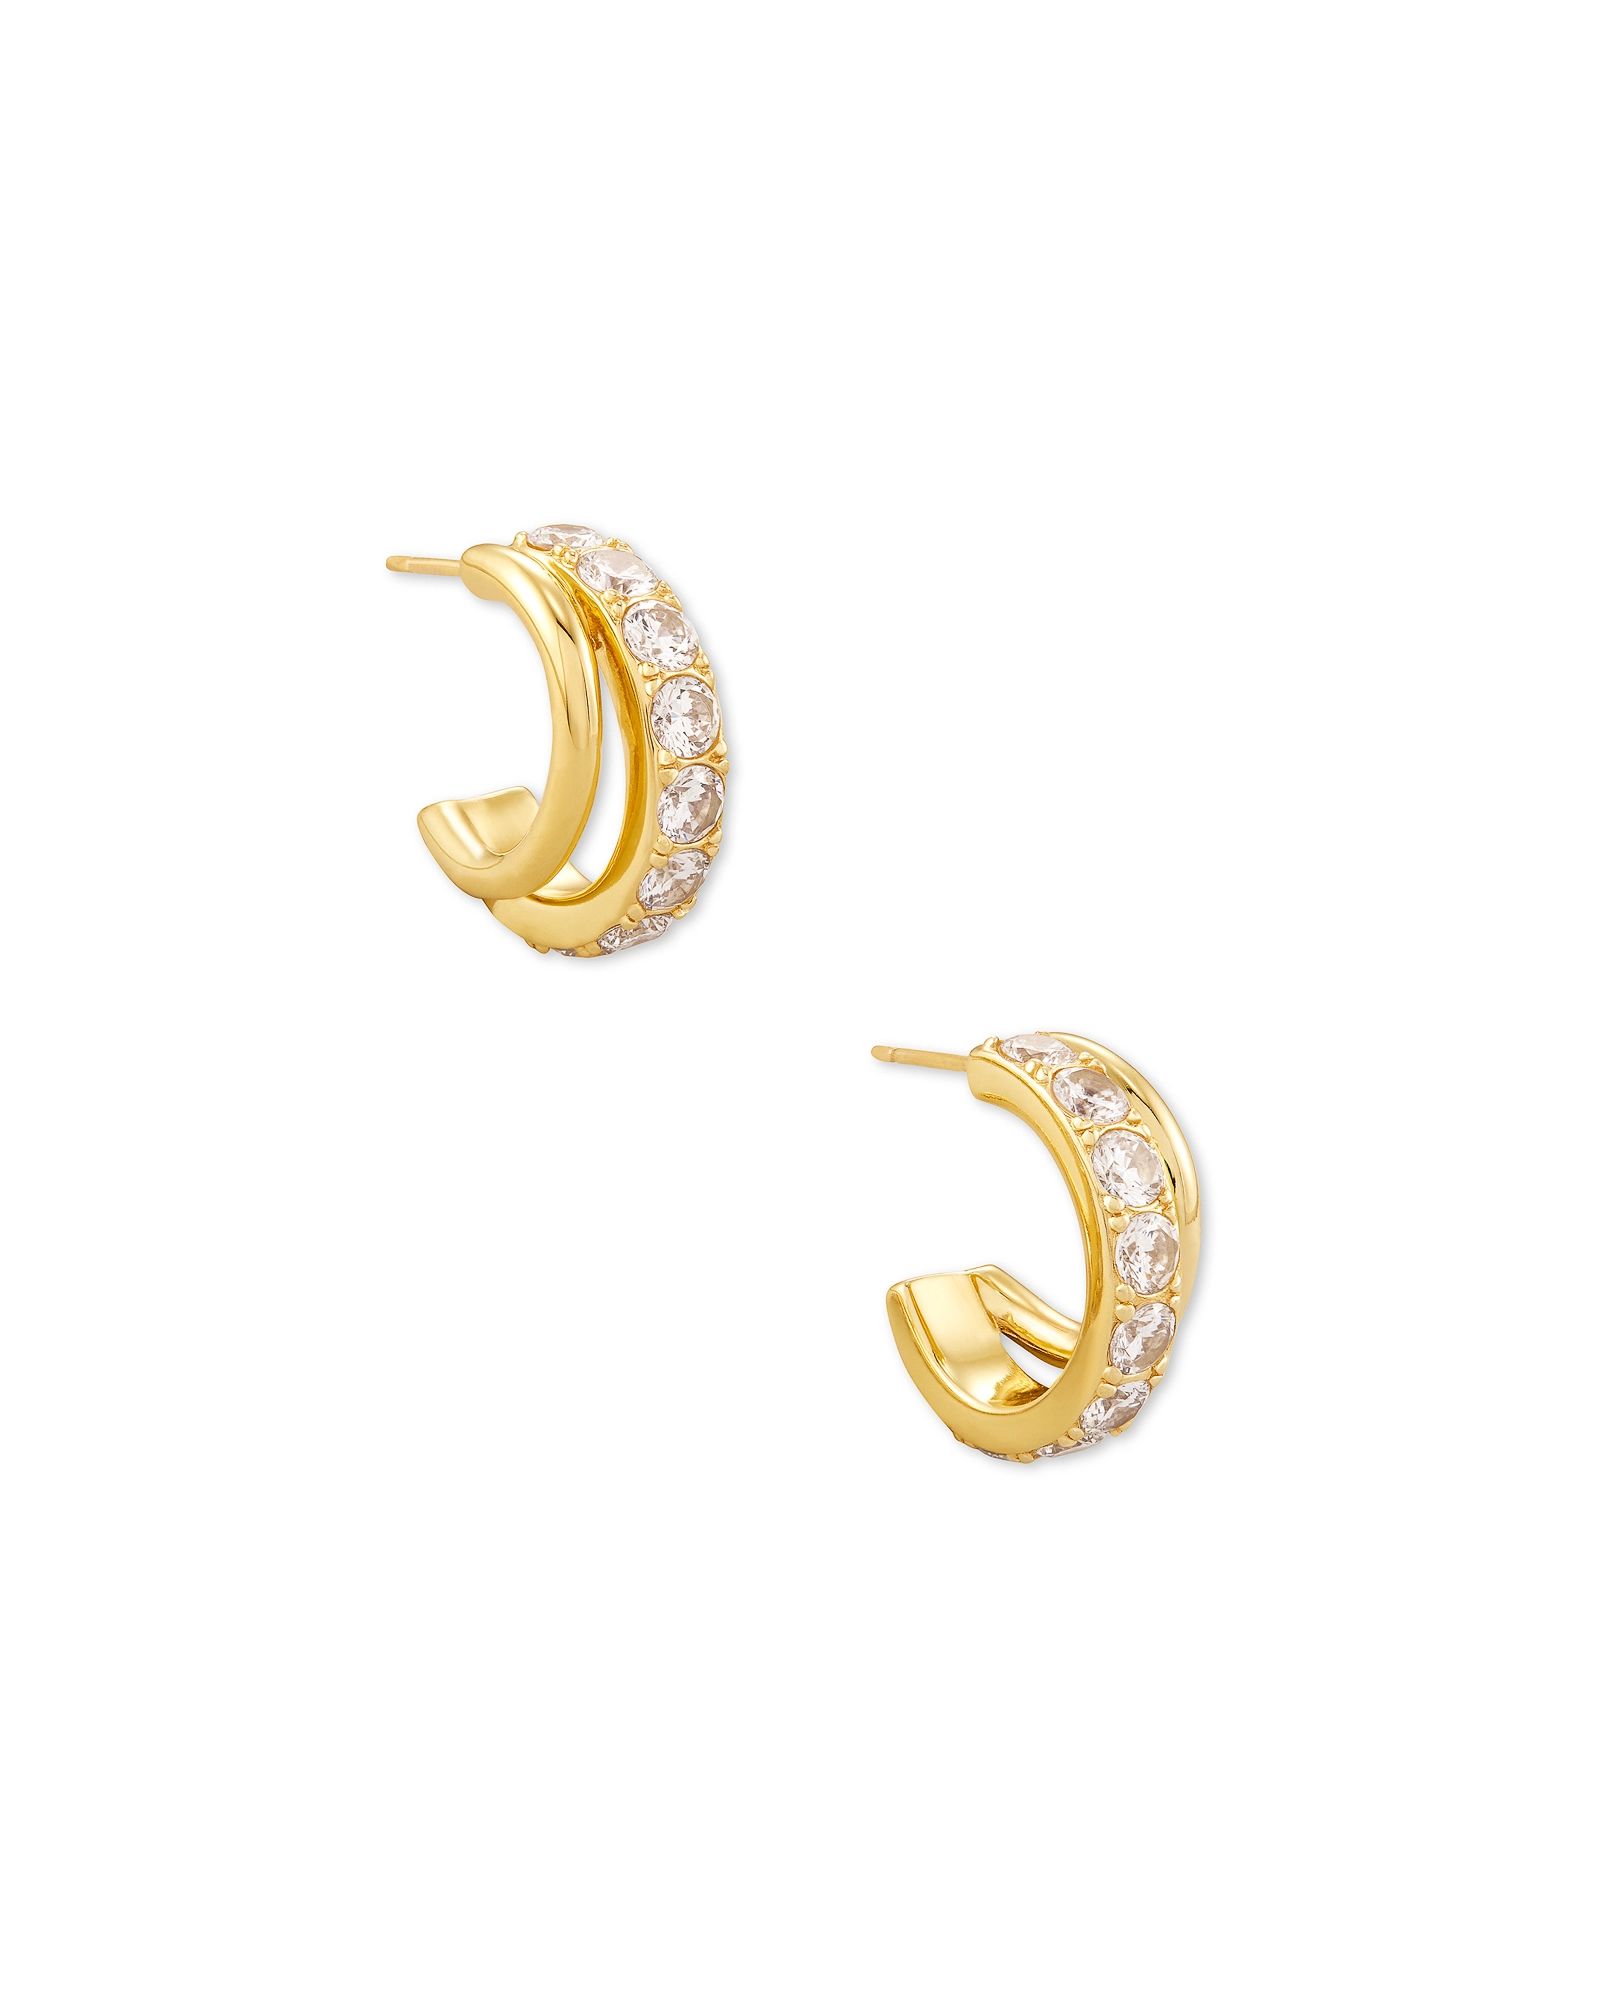 Livy Gold Huggie Earrings in White Crystal | Kendra Scott | Kendra Scott